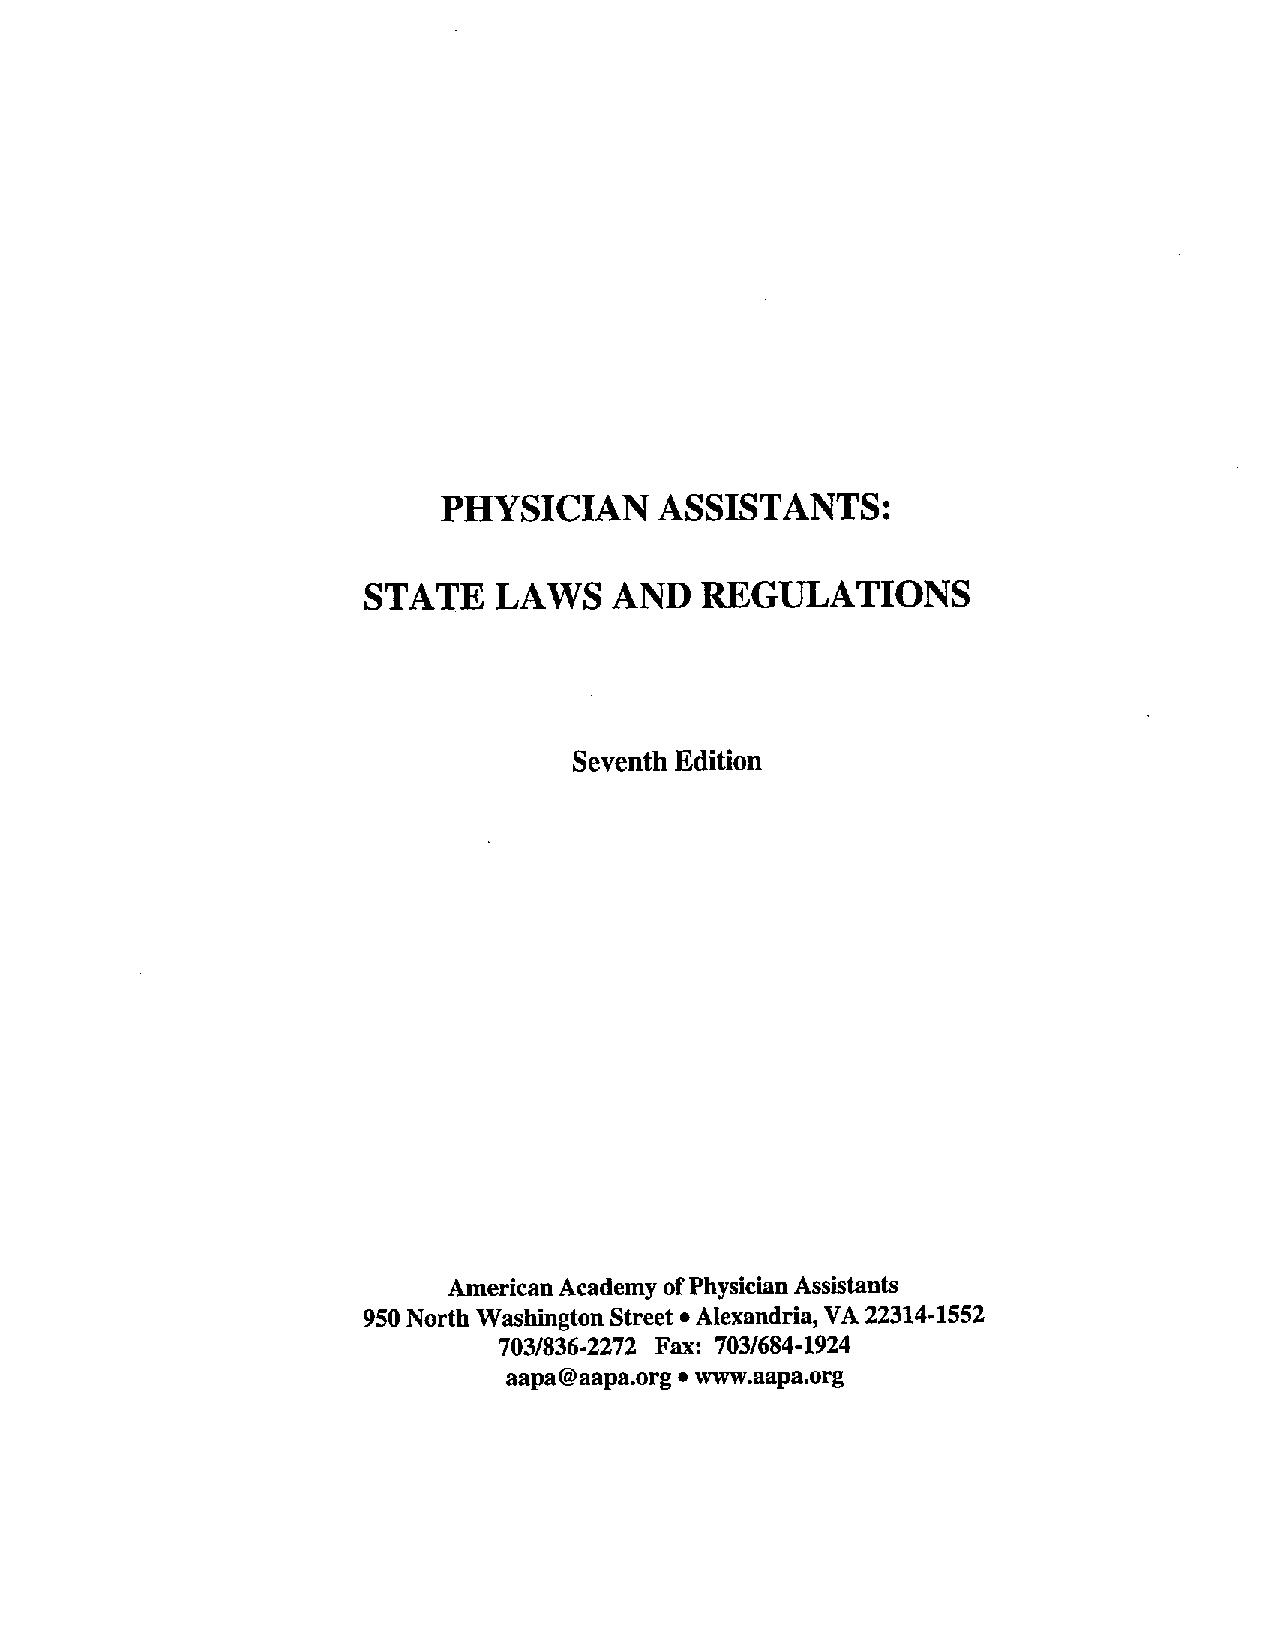 Leyes y reglamentos estatales de Pensilvania, 7.ª edición